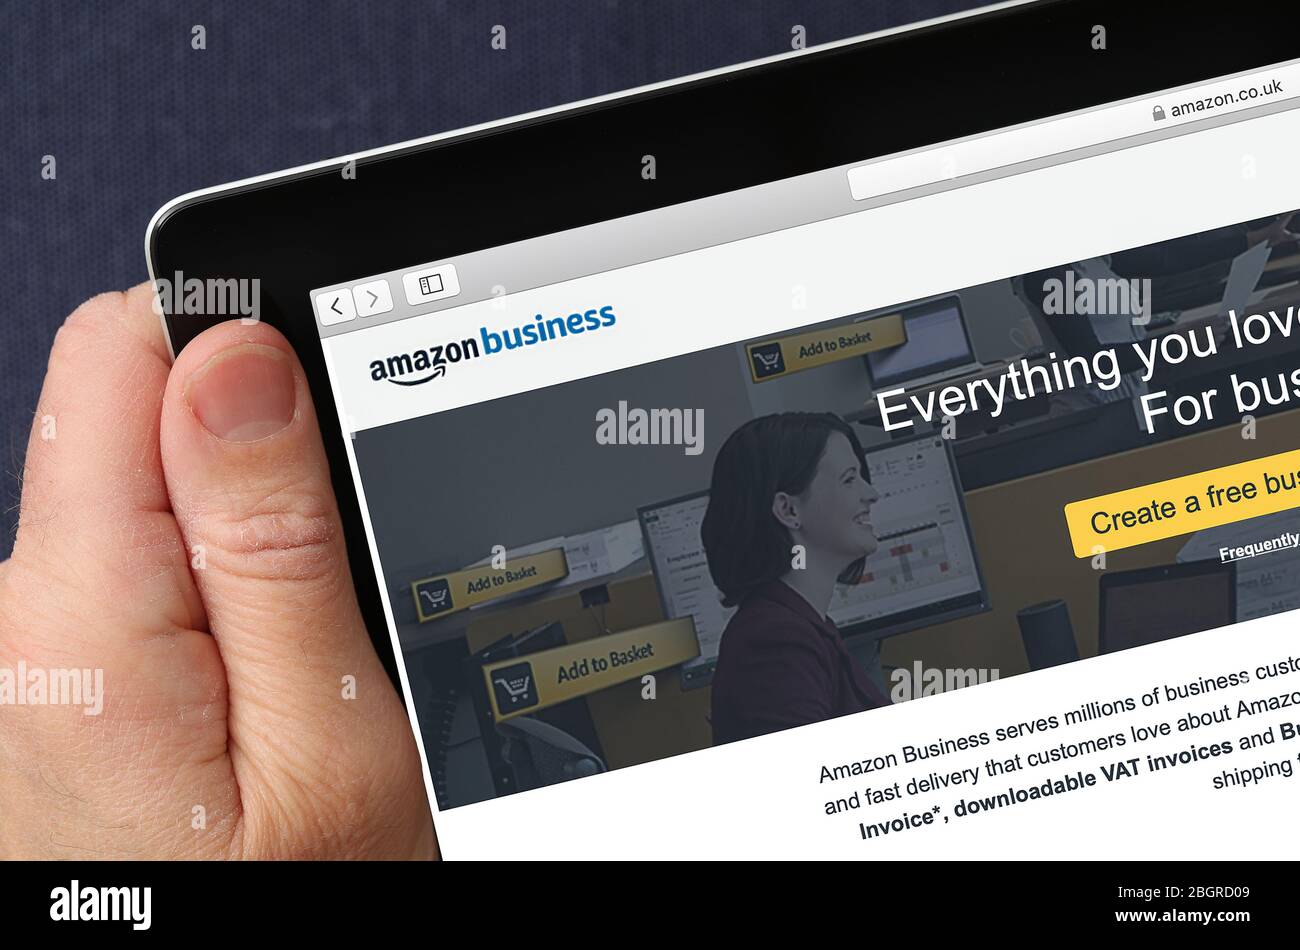 Amazon Business website on an iPad Stock Photo